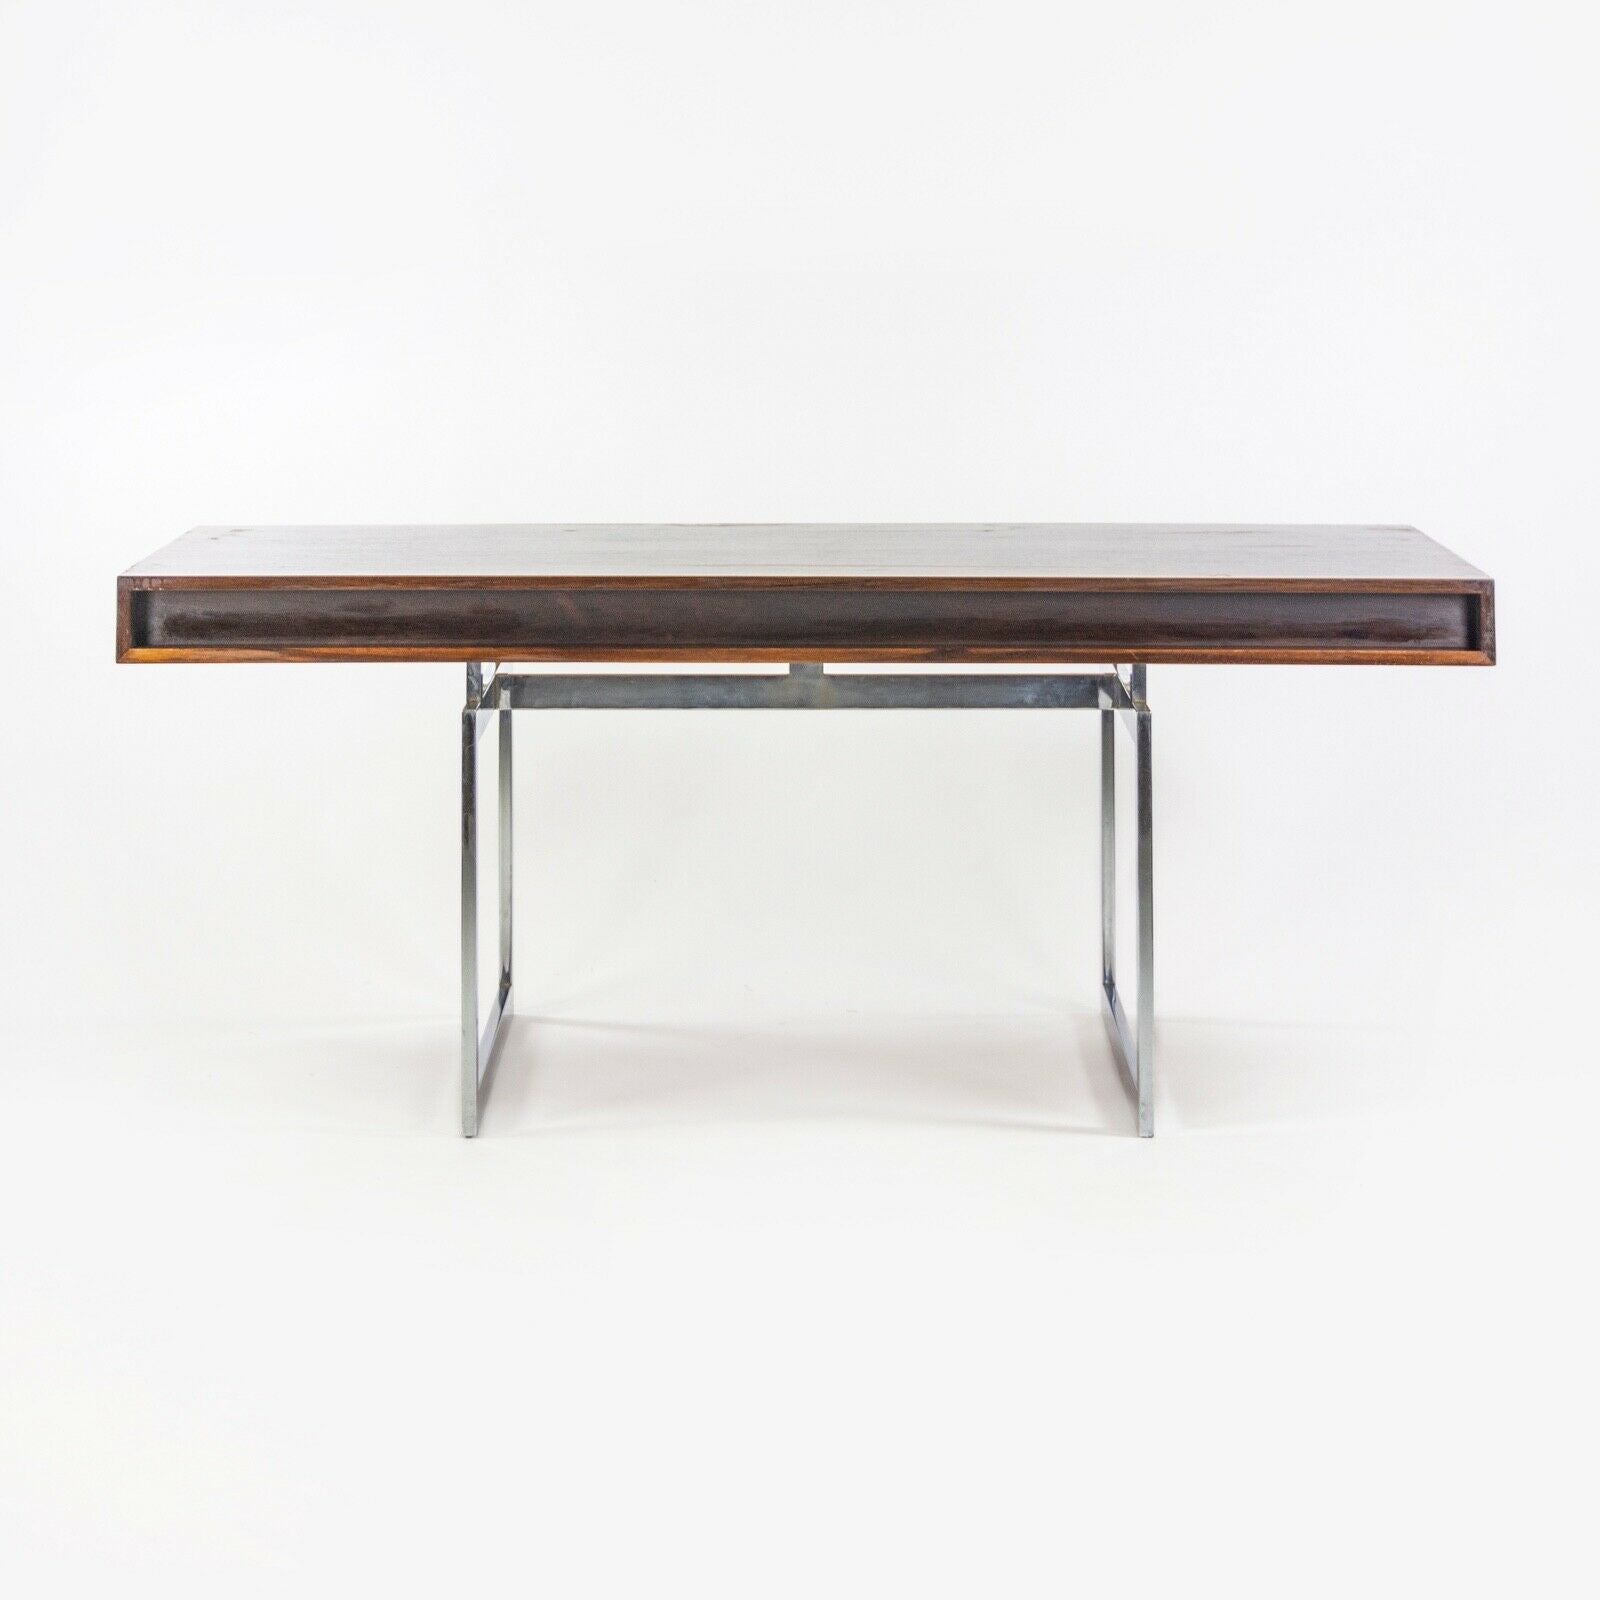 1959 4-Drawer Bodil Kjaer Desk for E. Pedersen & Son Brazilian Rosewood Made in Denmark